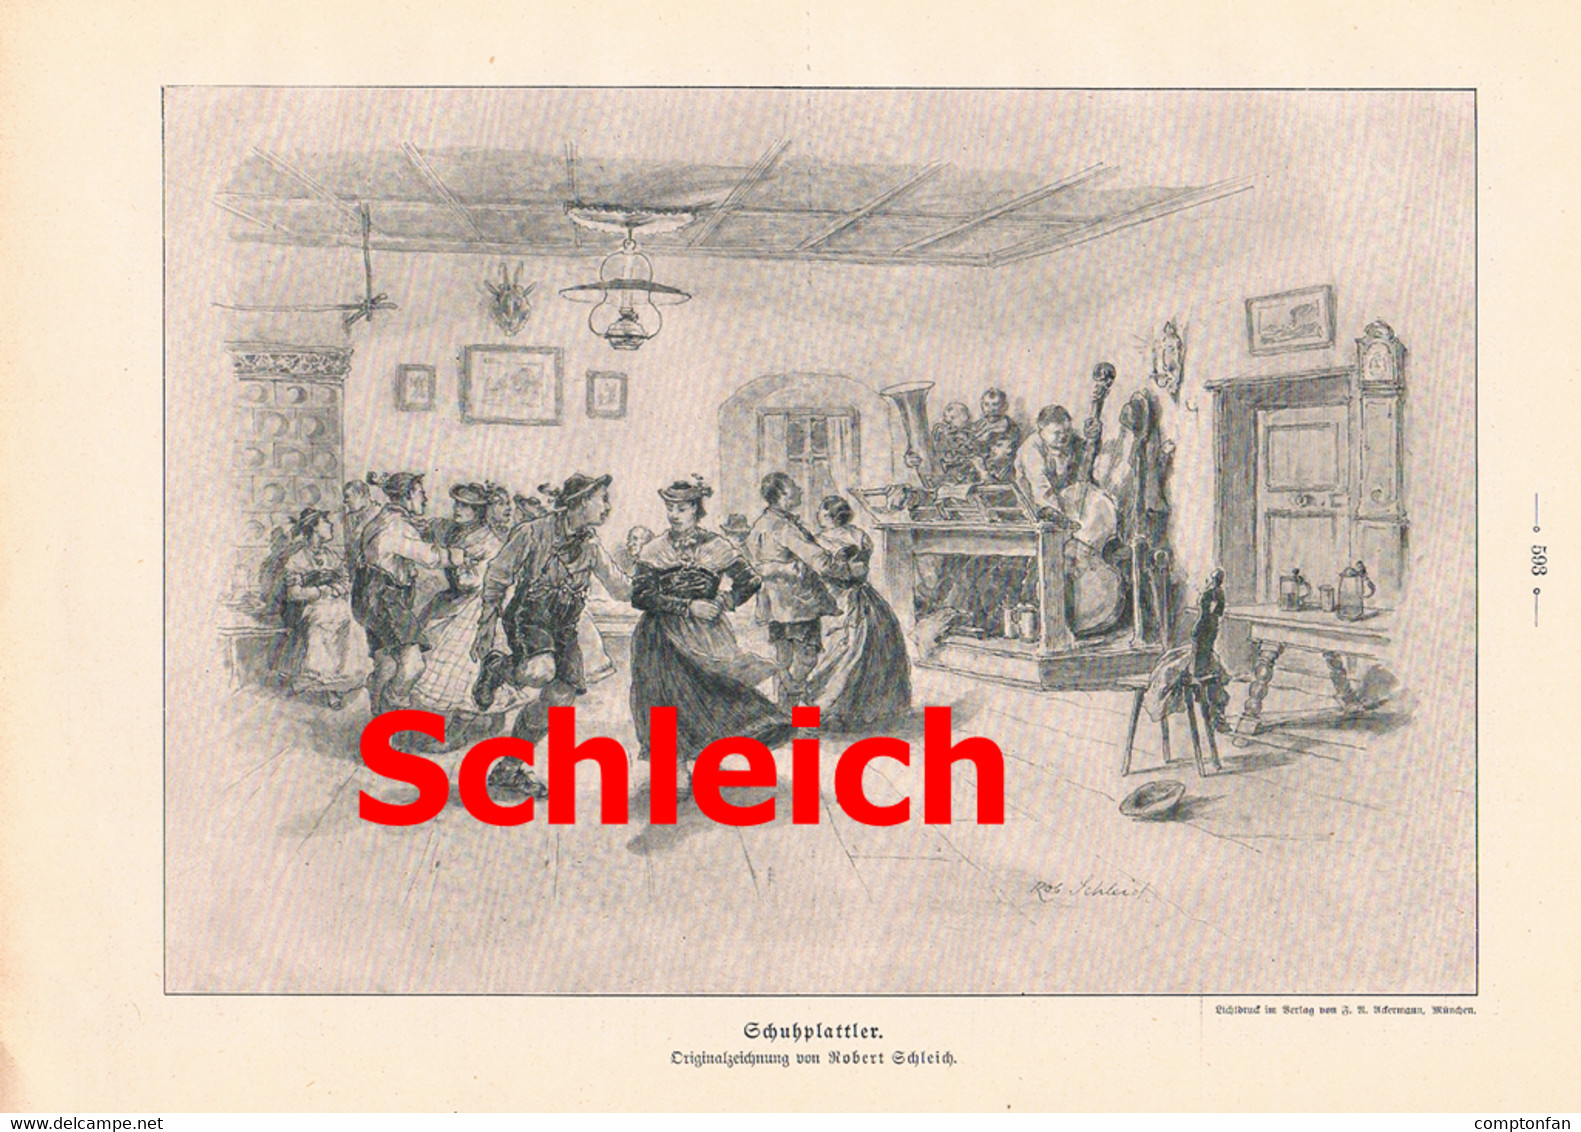 A102 812 Robert Schleich Schuhplattler Tegernsee Schliersee Artikel Mit Bild 1905 !! - Teatro & Danza